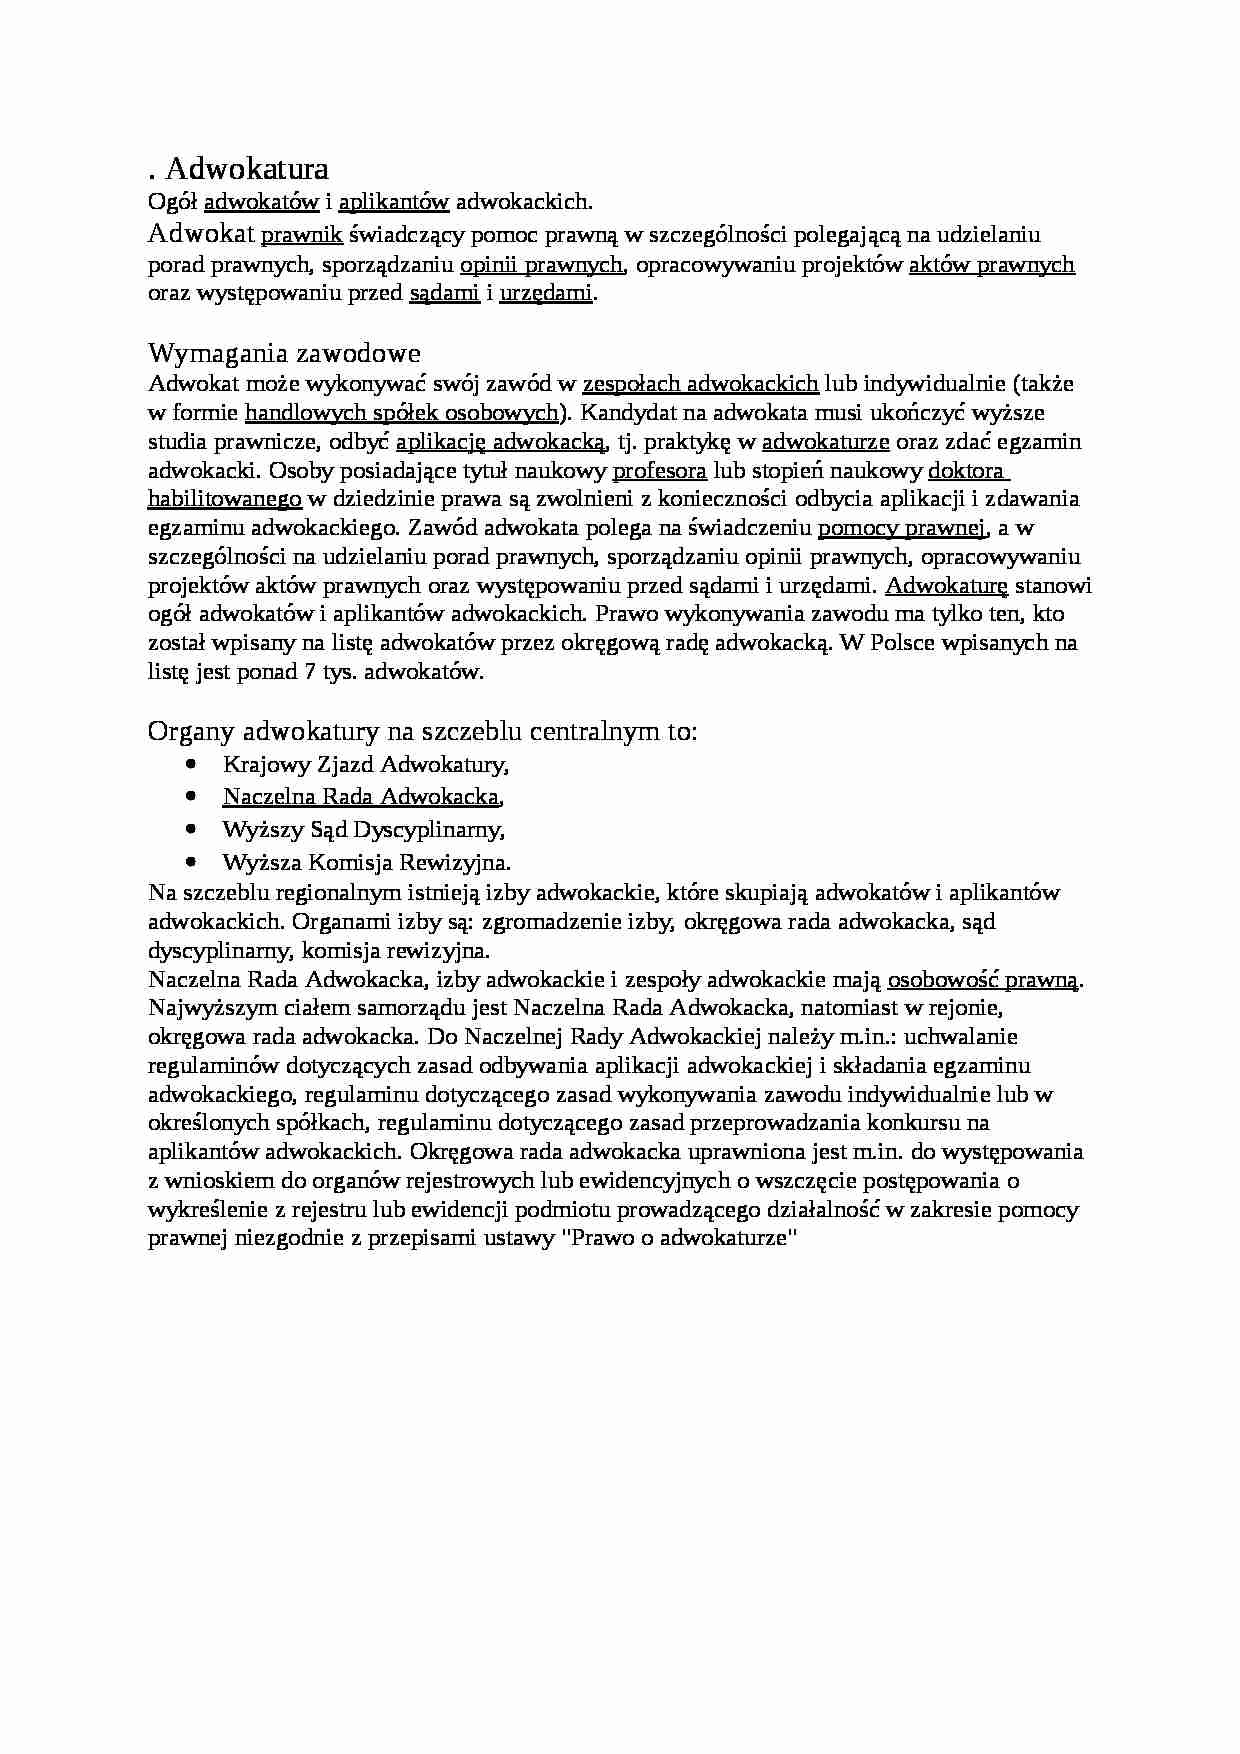 Adwokatura -   Wymagania zawodowe  - strona 1